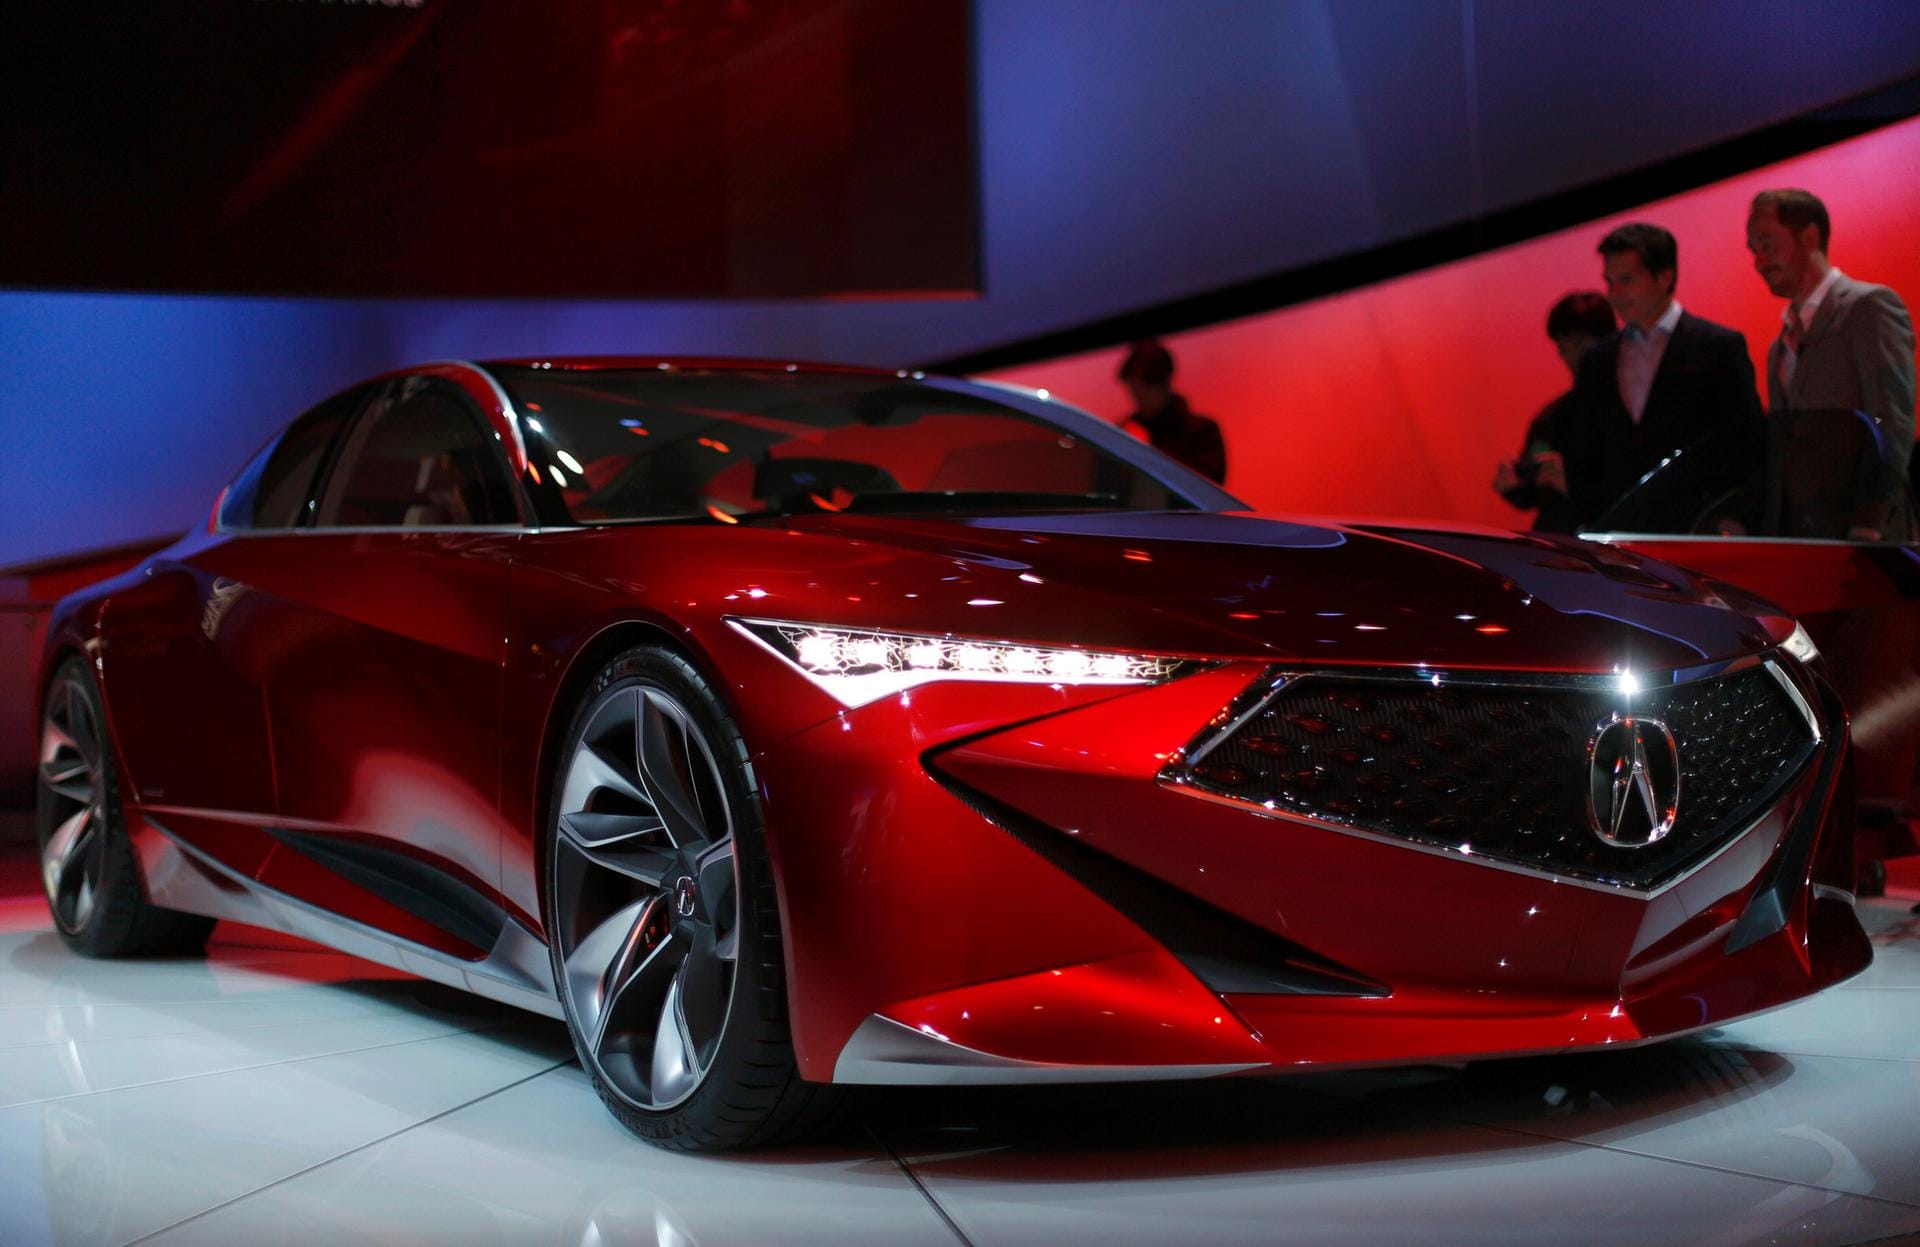 The Acura Precision concept: Das über fünf Meter lange, viertürige Coupé zeigt das kommende, kantige Design der Honda-Marke.